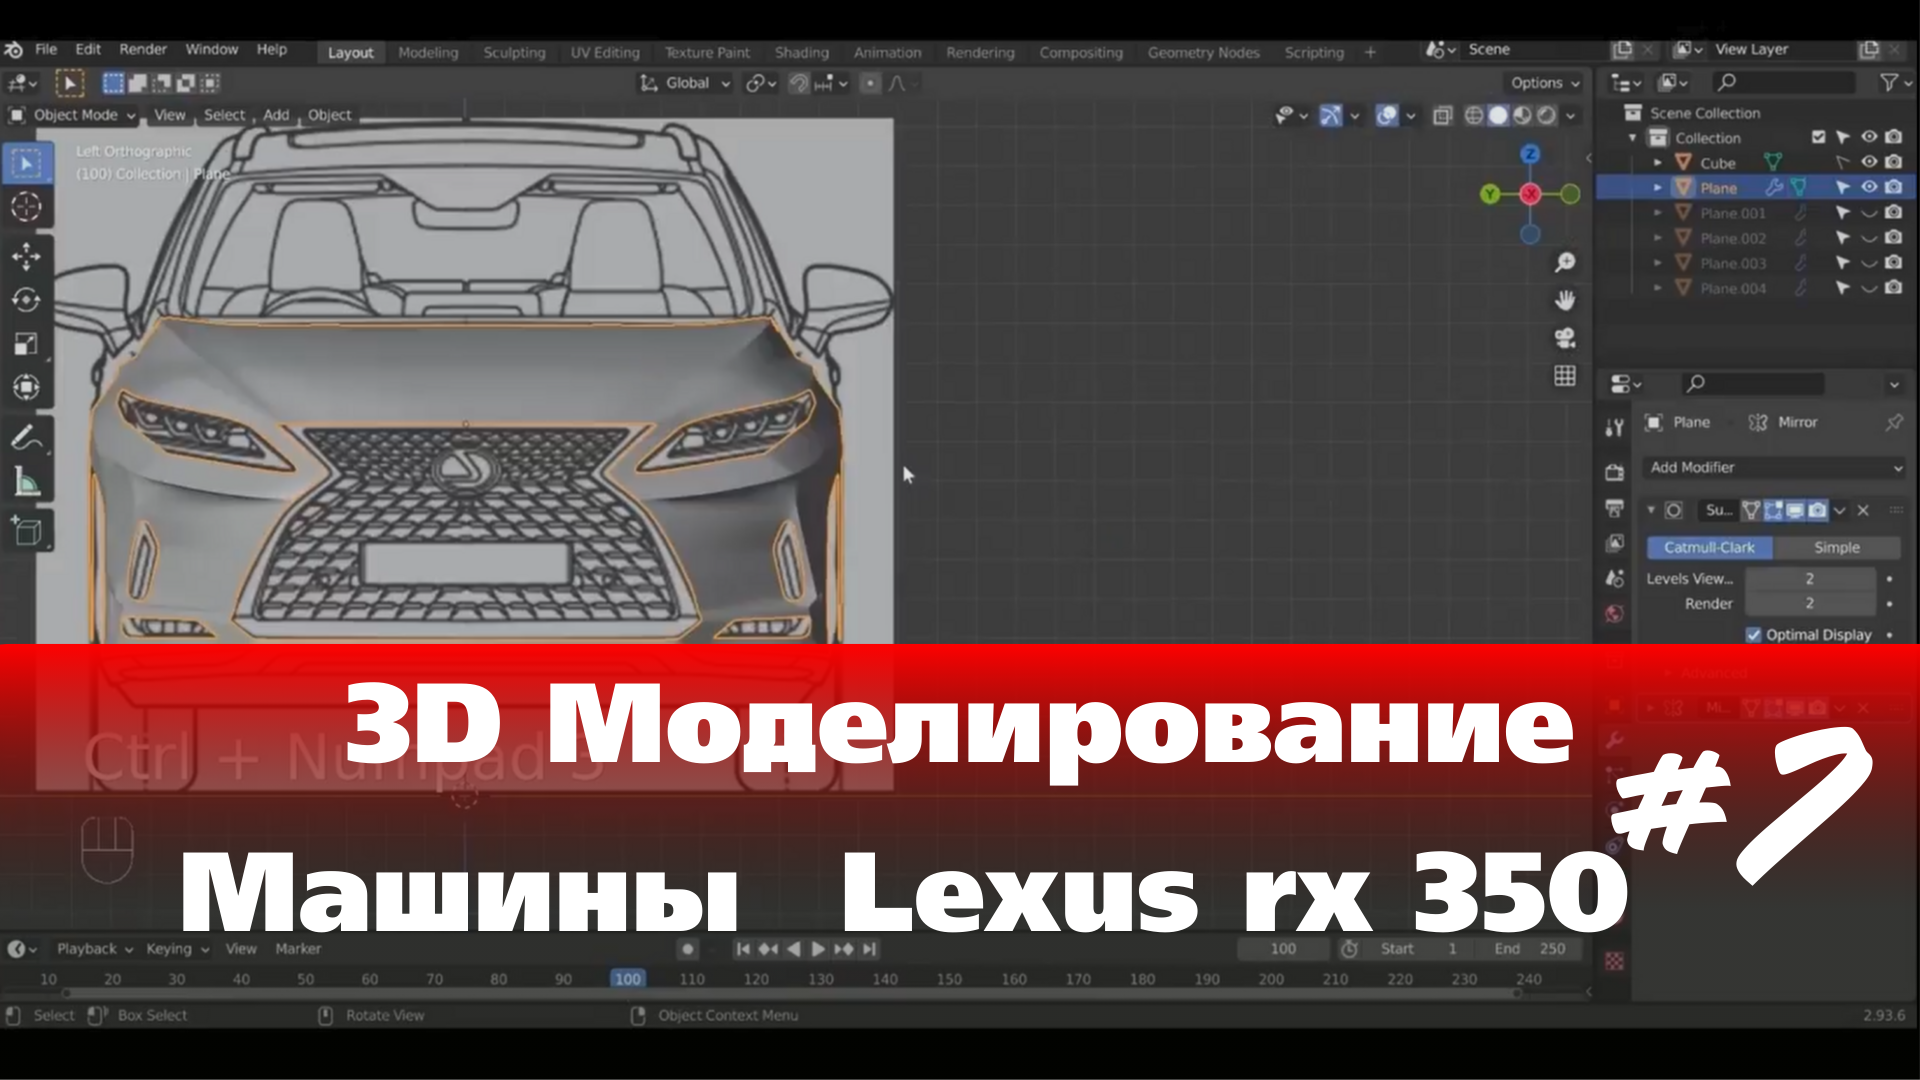 3D Моделирование Машины в Blender - Lexus rx 350 часть 7 #Blender